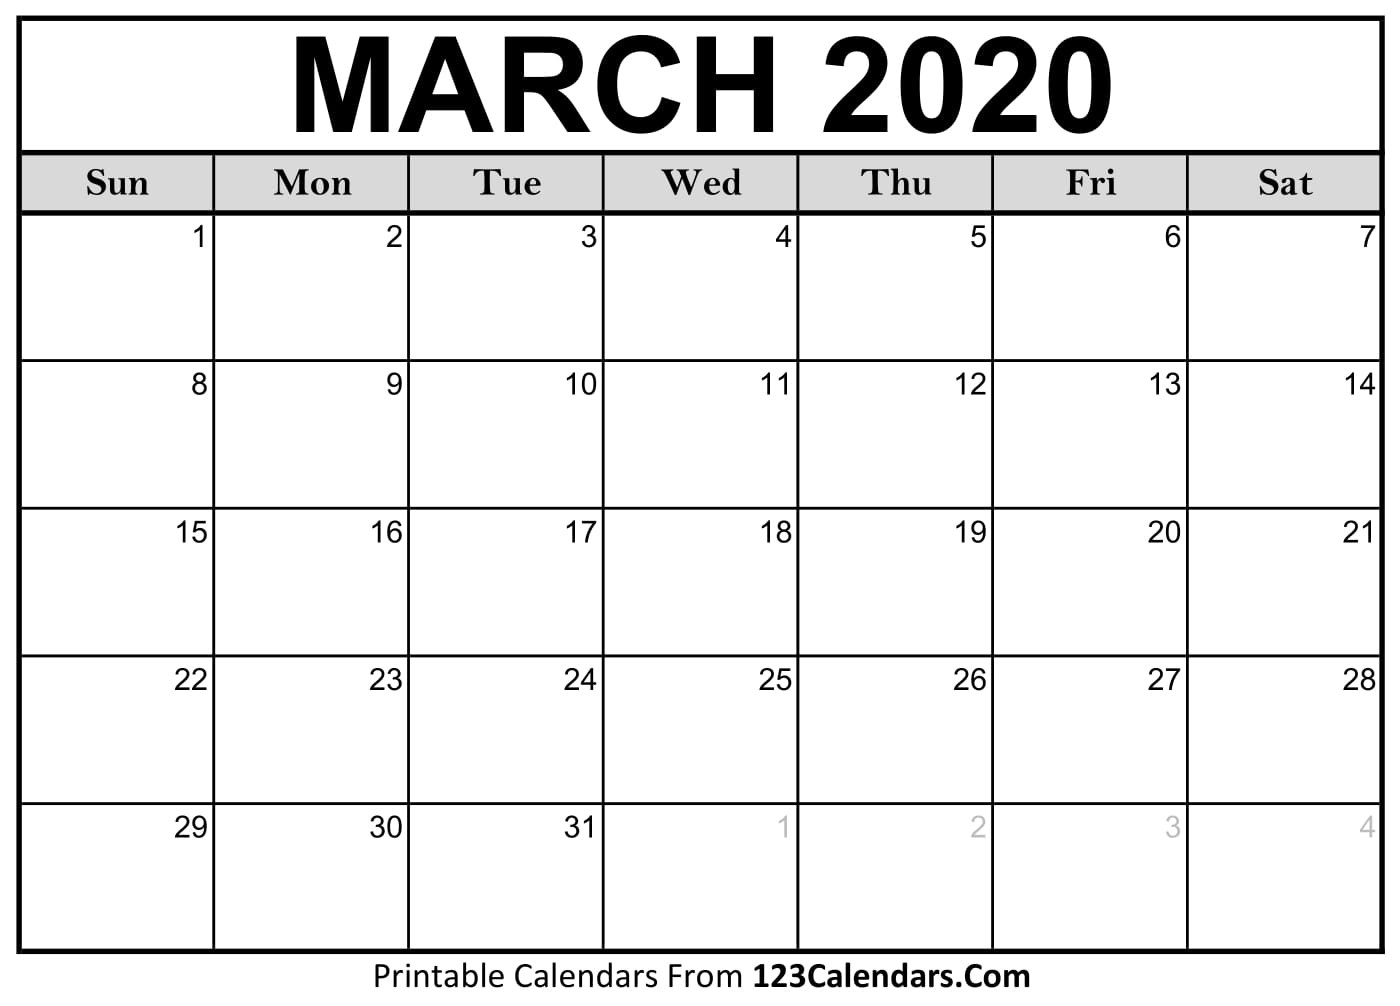 march 2020 printable calendar 123calendars com